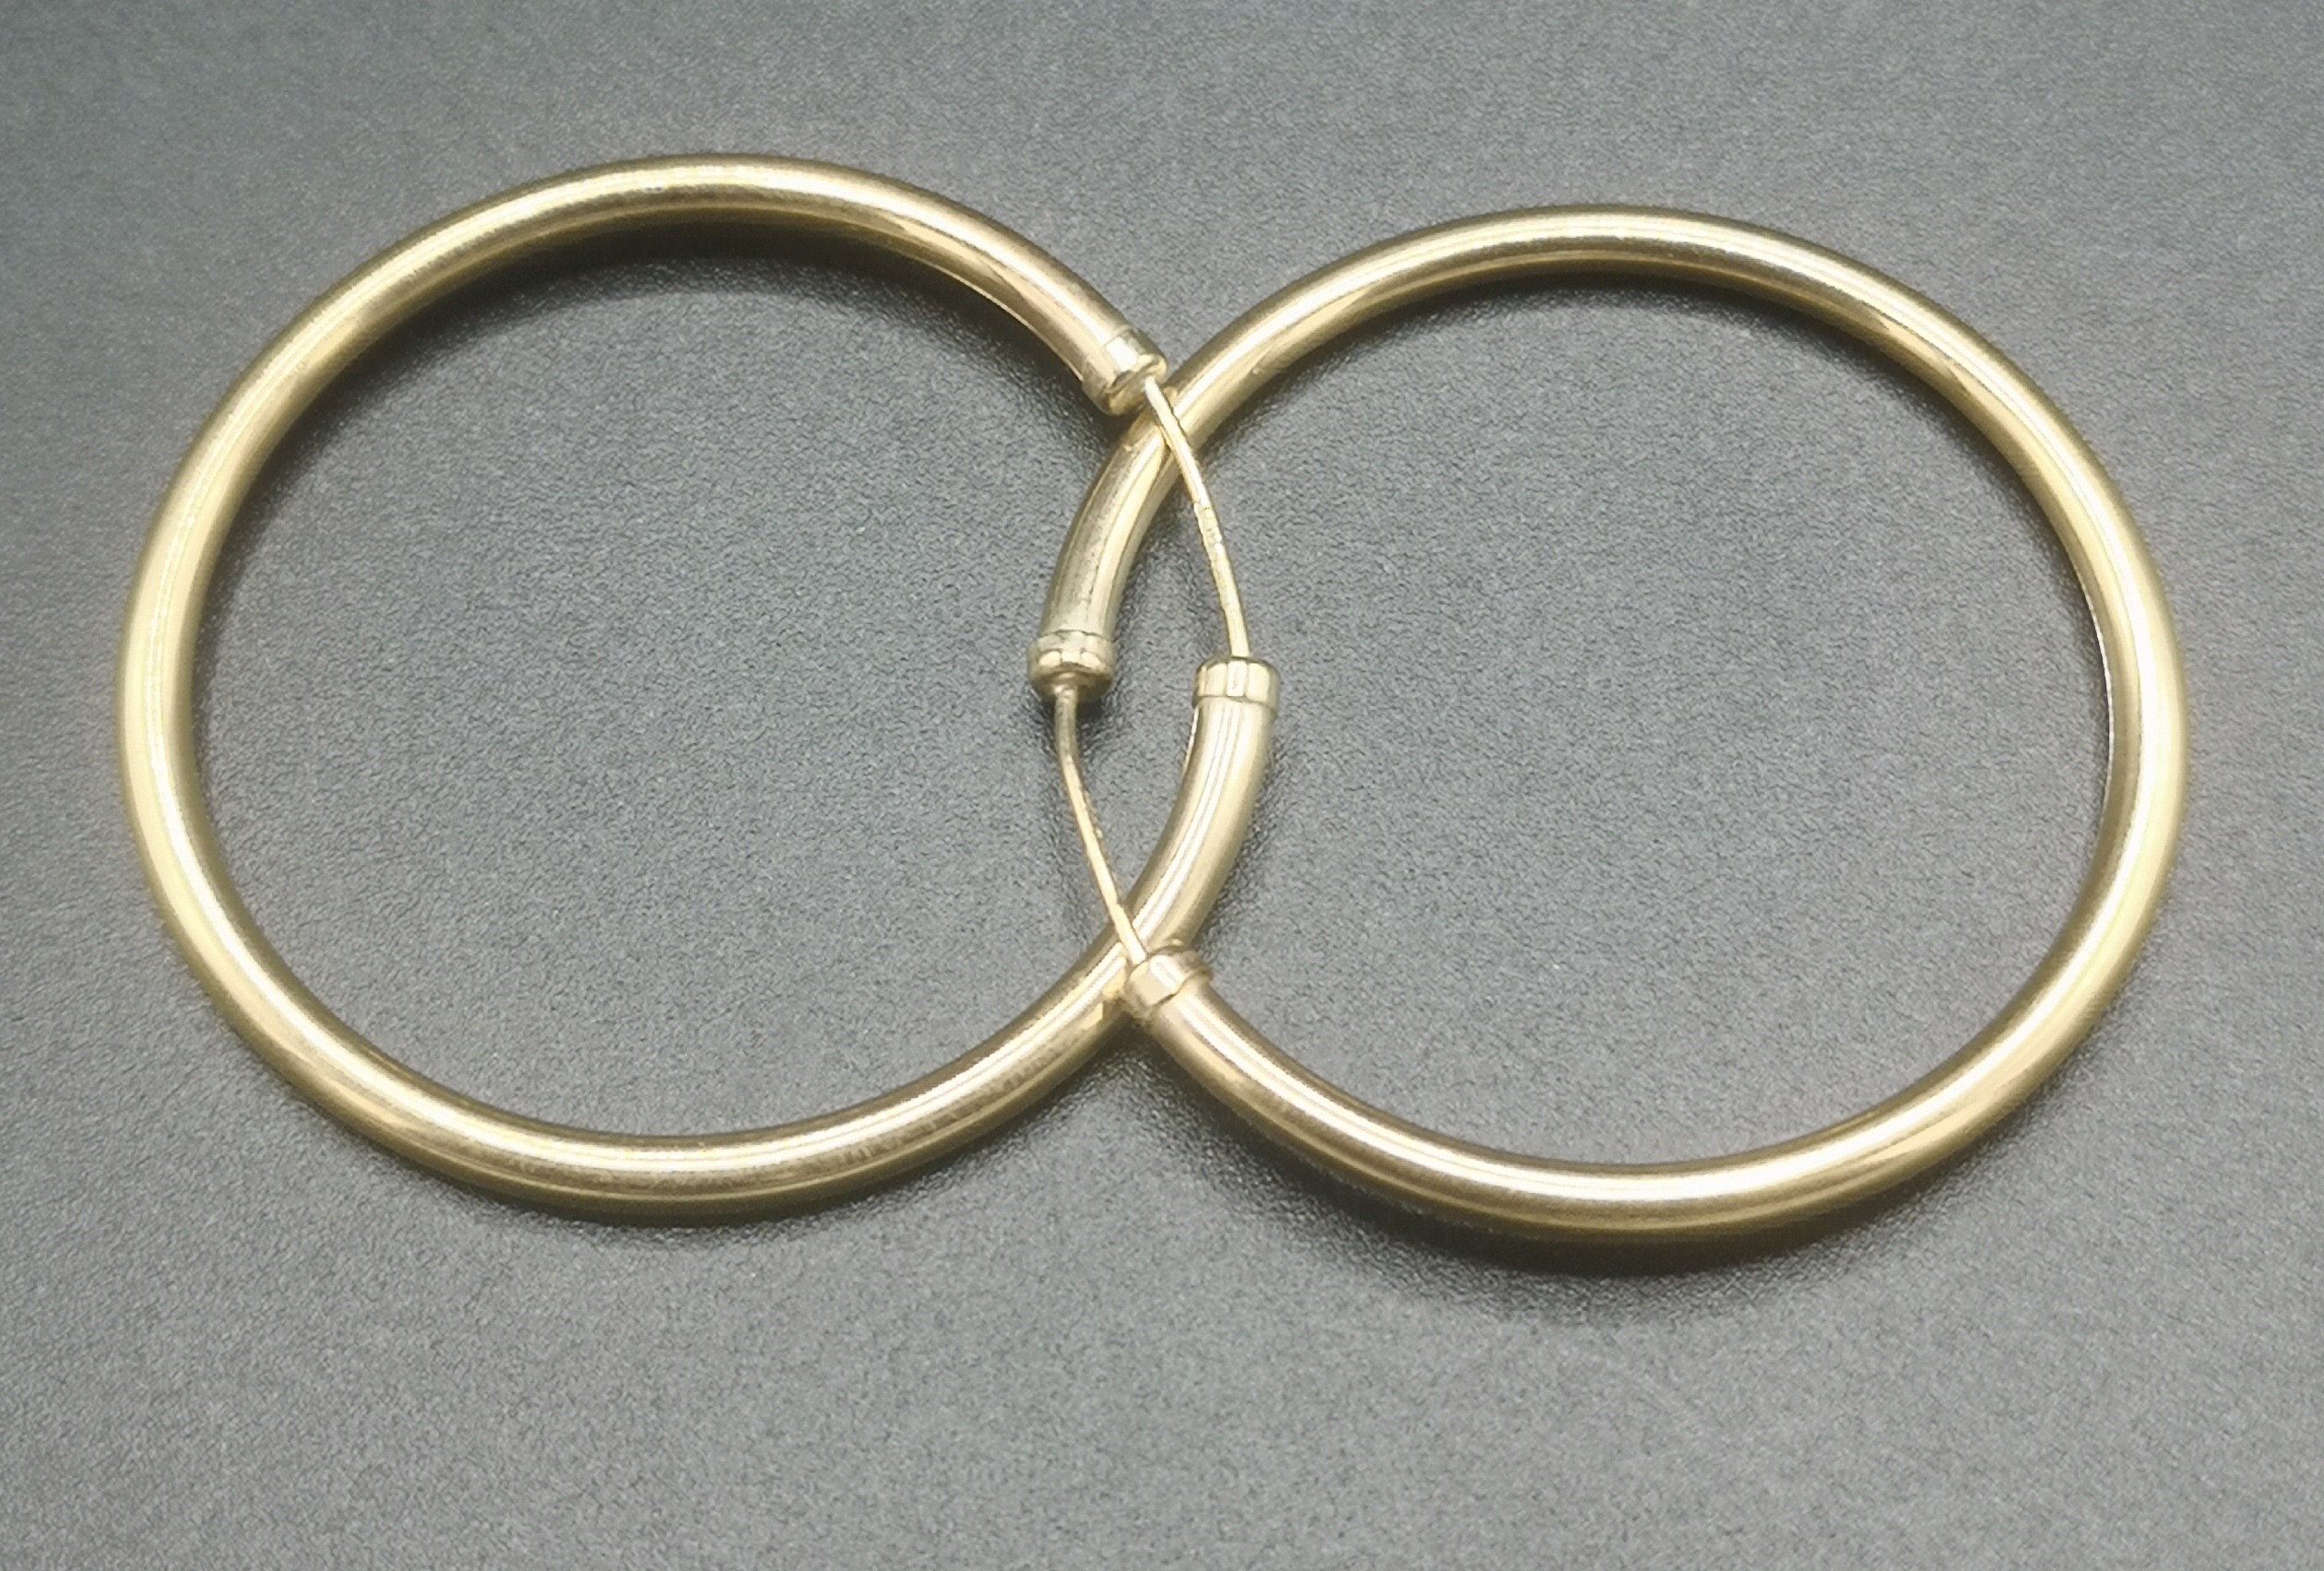 Pair of 9ct gold hoop earrings - Image 2 of 3